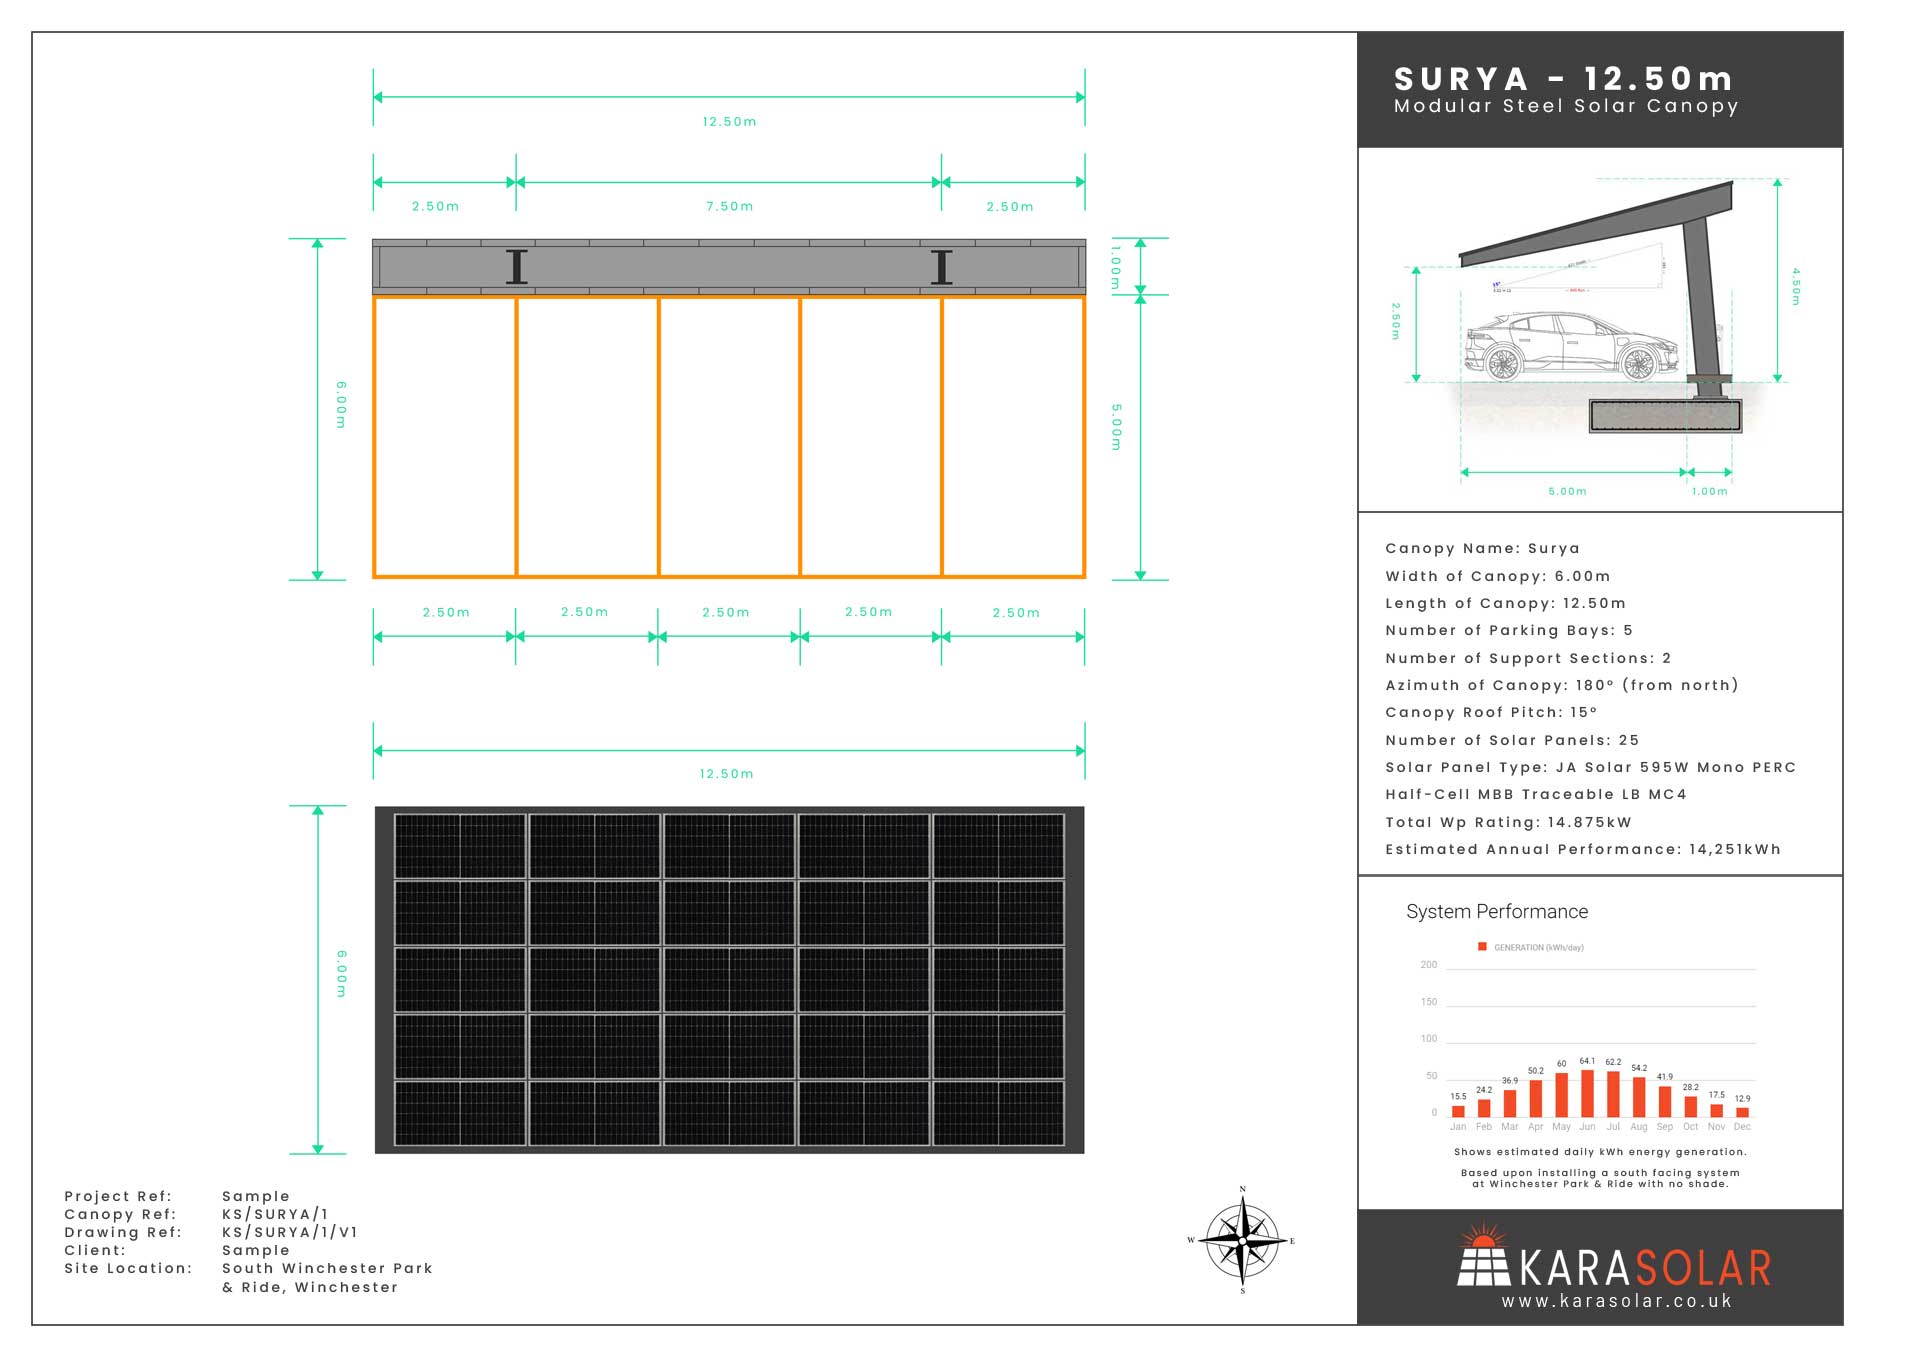 Surya-Solar-Canopy-Datasheet-Sample-12.50m